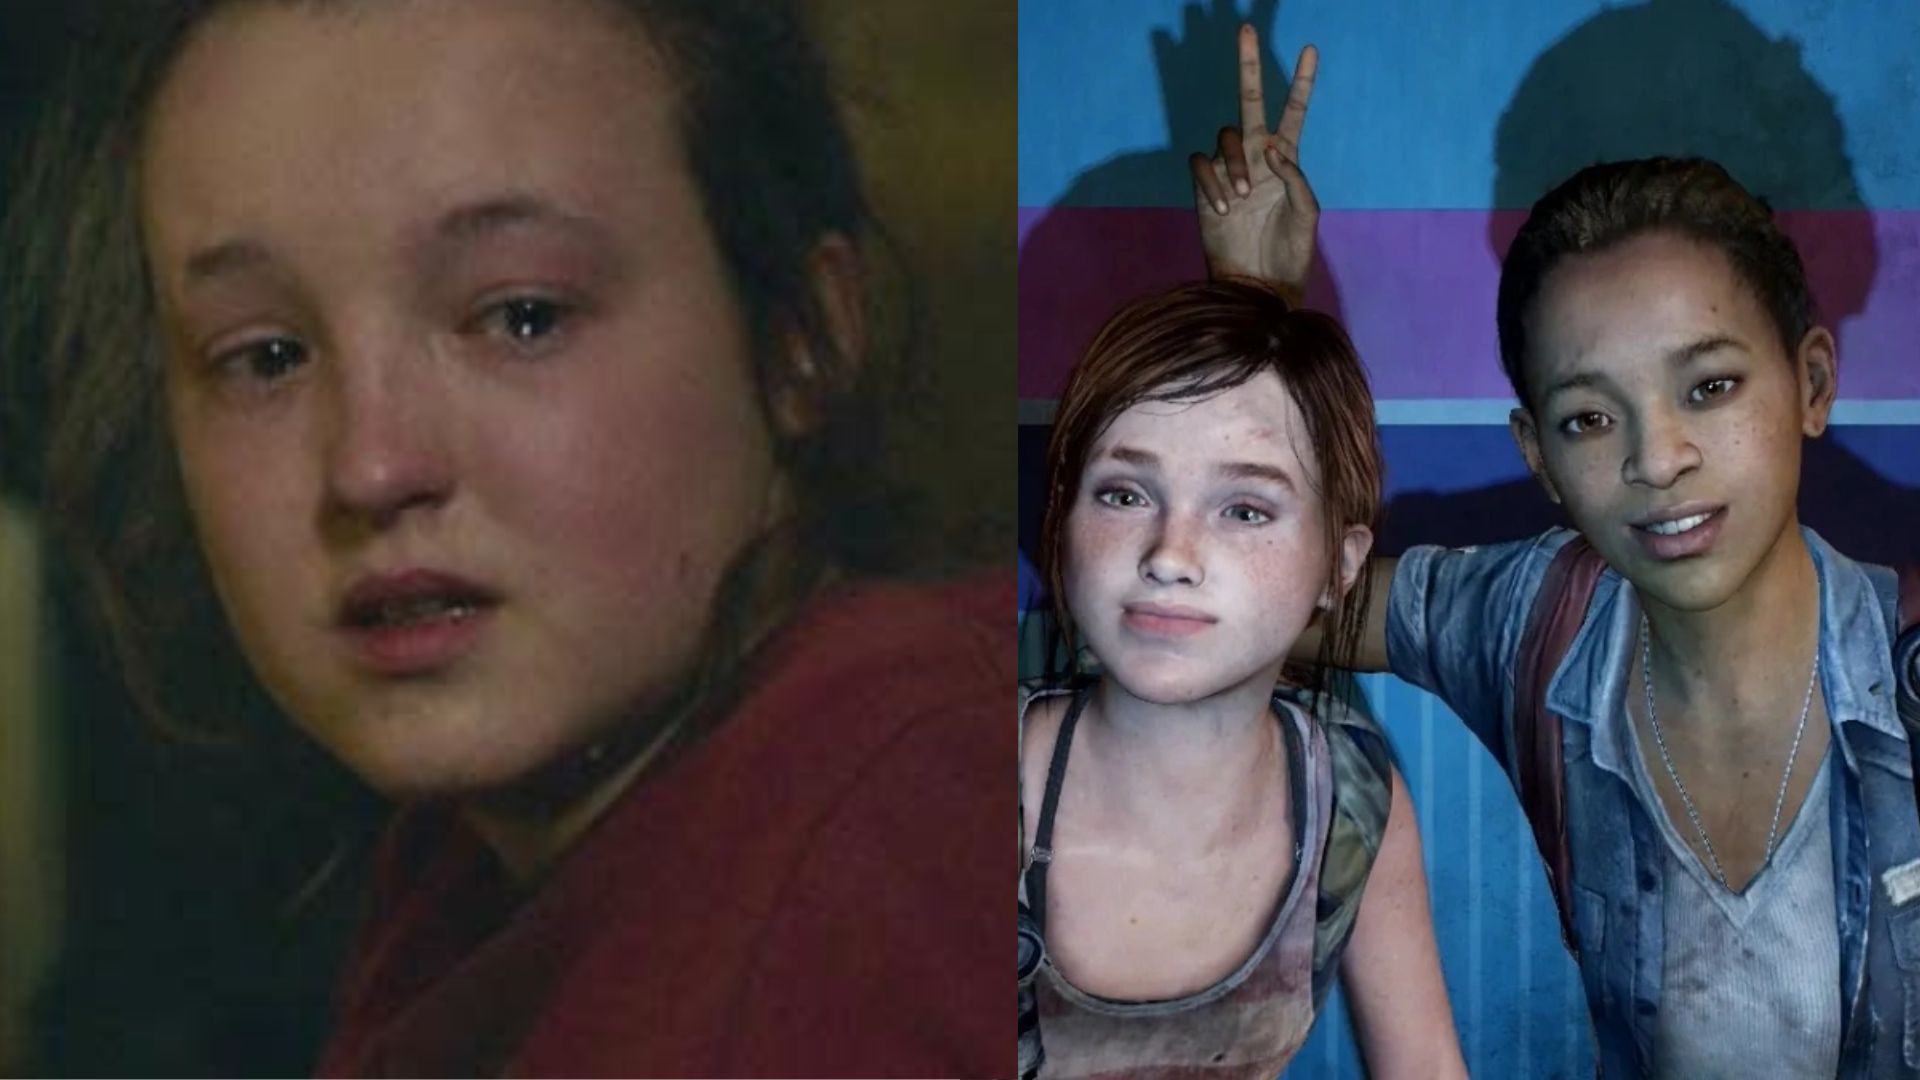 The Last of Us: Quem é Riley e por que Ellie ficou abalada ao ouvir o nome?